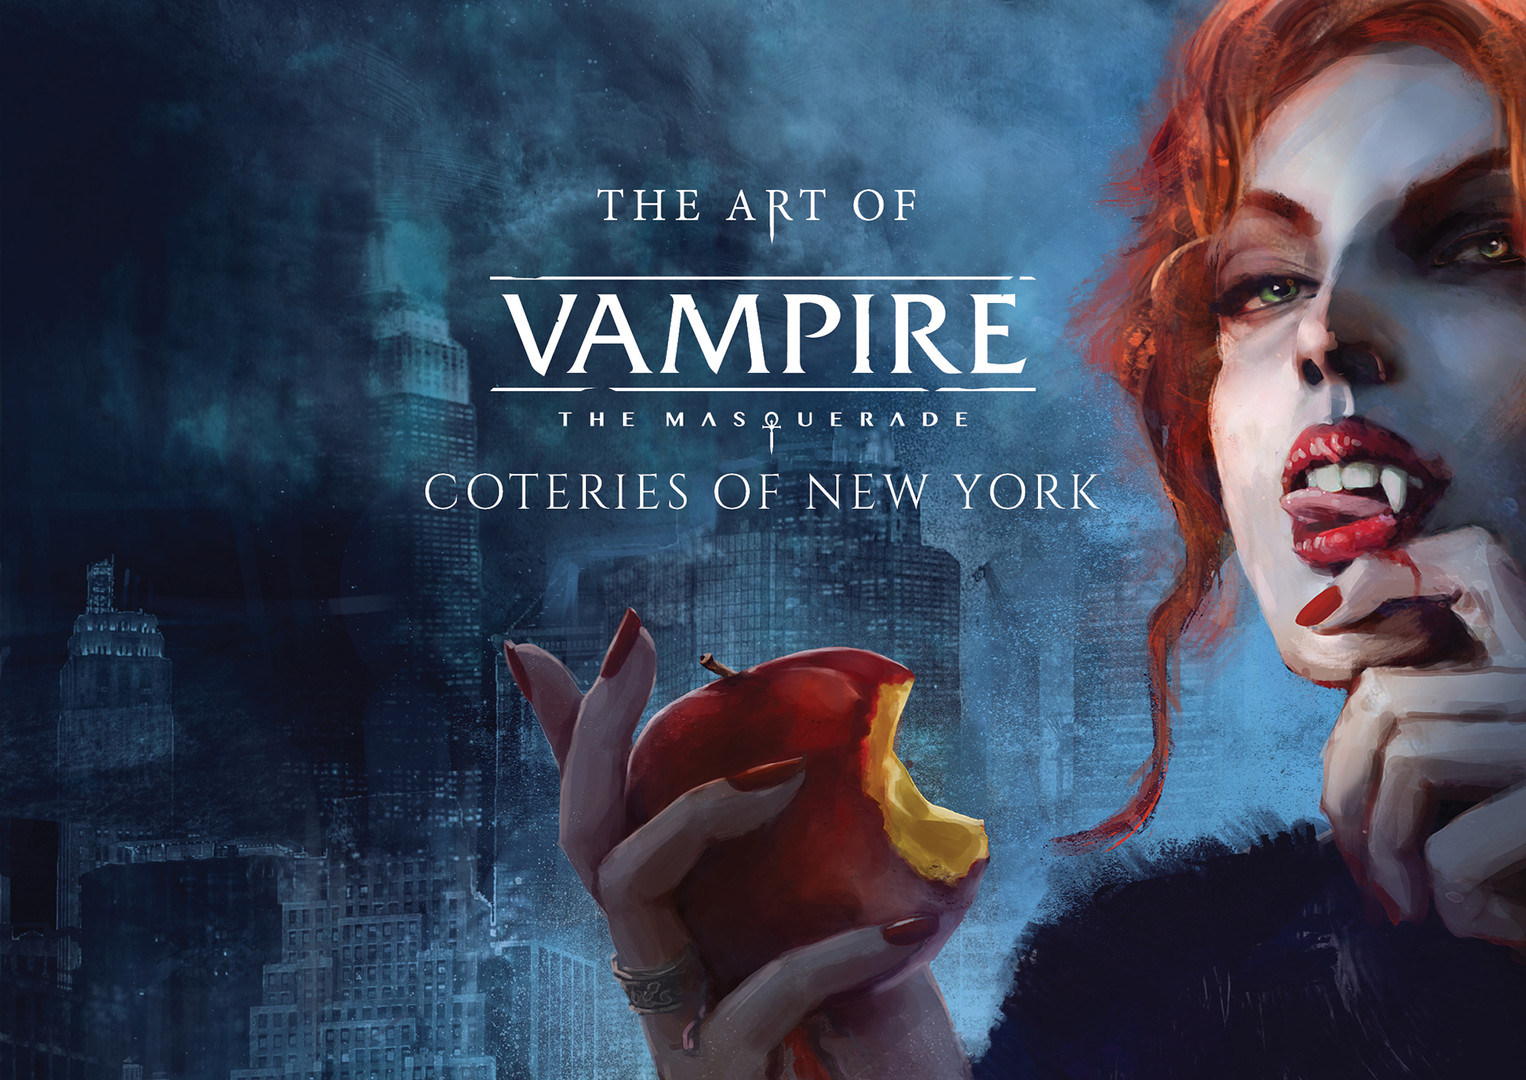 [$ 1.41] Vampire: The Masquerade - Coteries of New York Digital Artbook DLC Steam CD Key